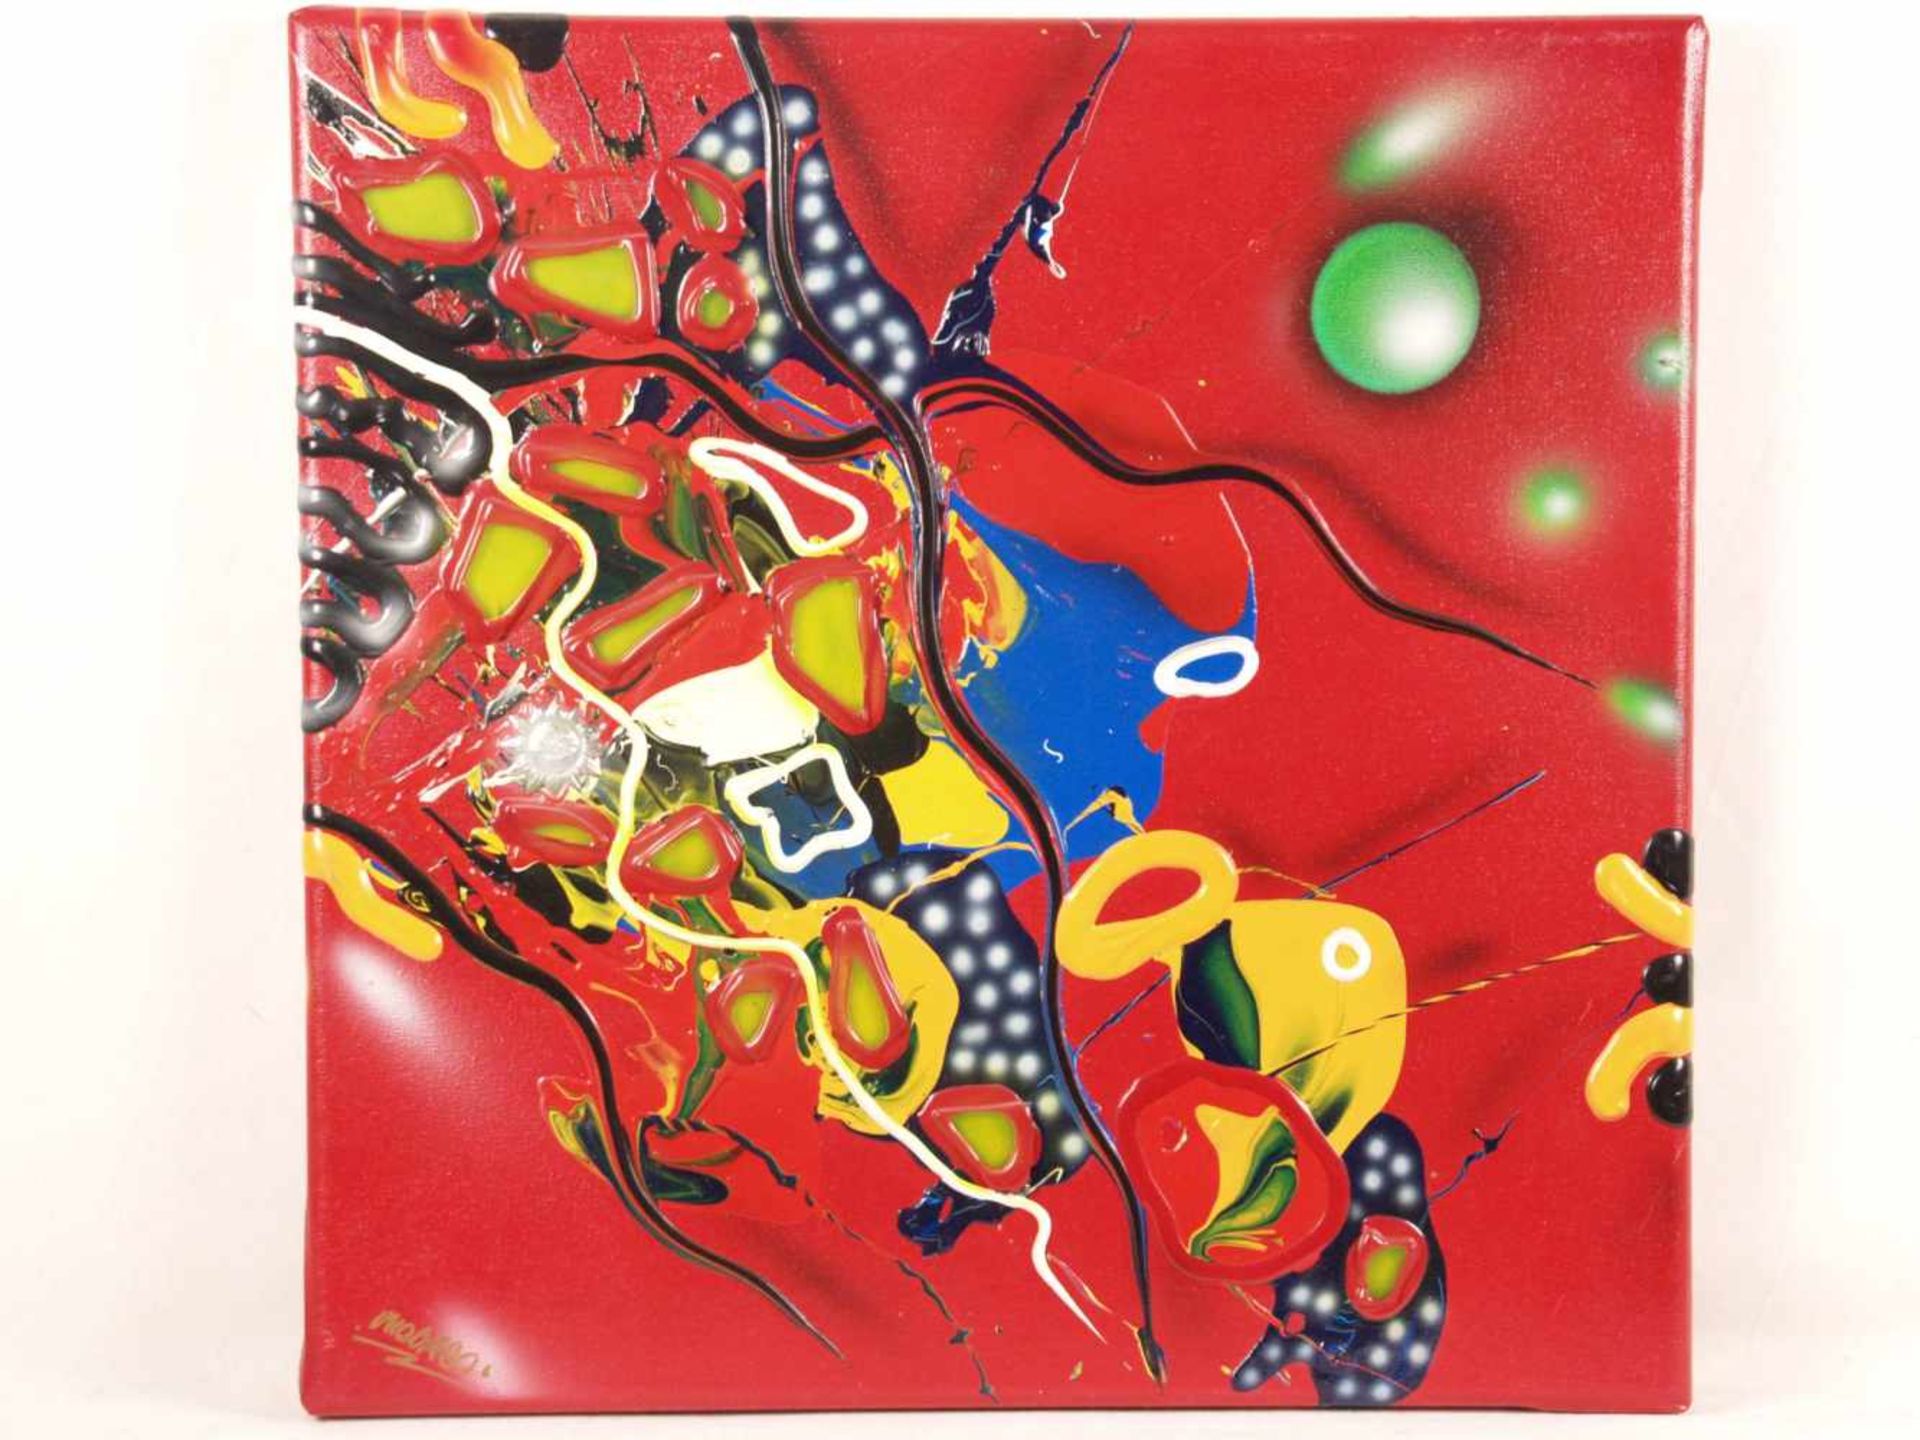 Micmac (Bea Schröder, zeitgenössische Künstlerin in Düsseldorf) - Abstraktion auf rotem Hintergrund,